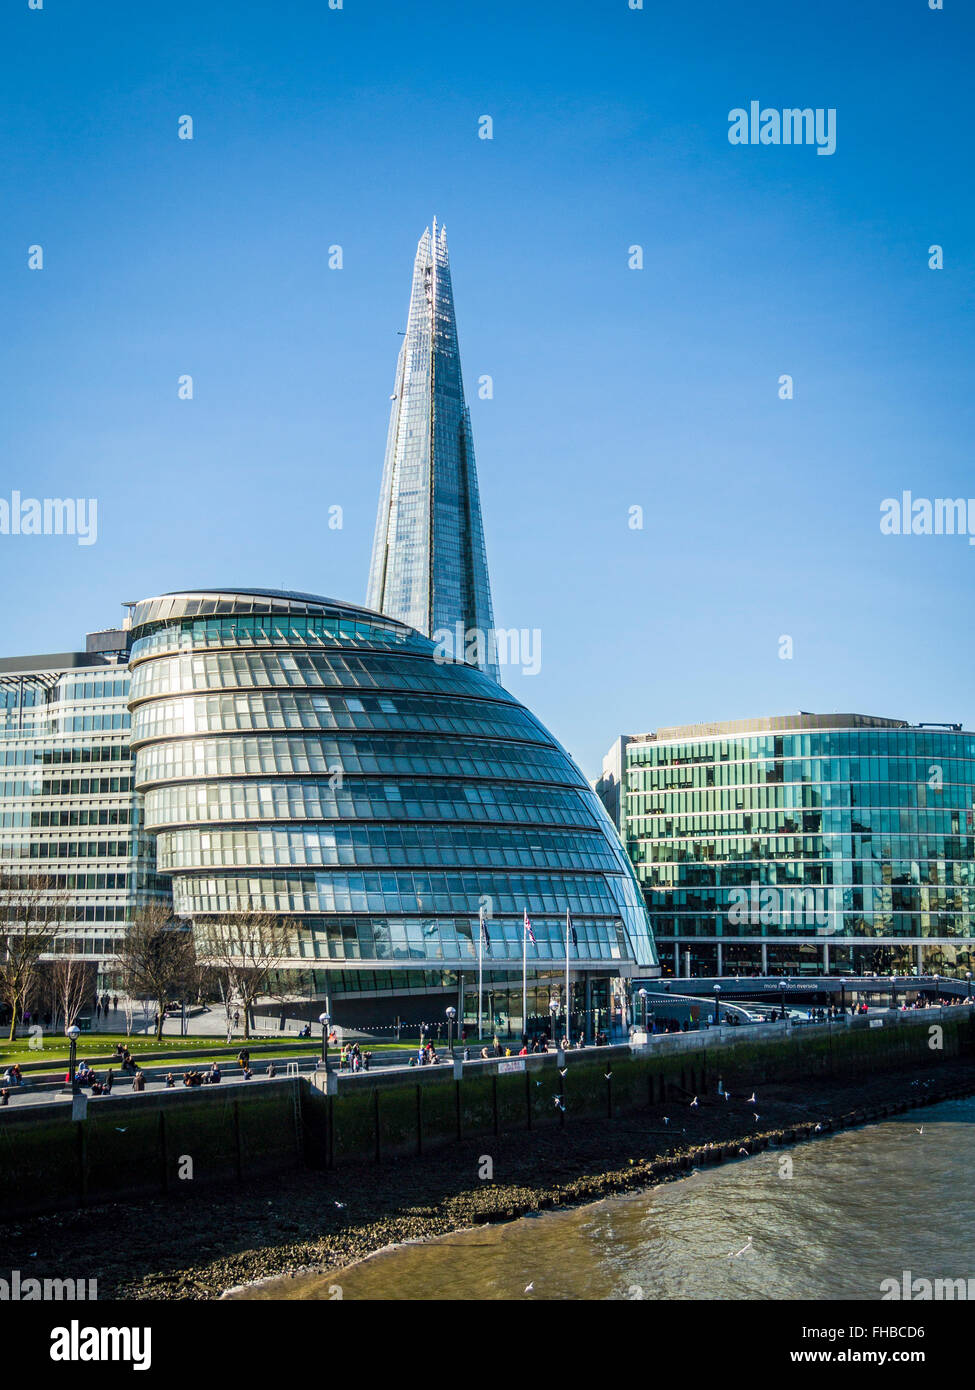 City Hall, The Shard und More London am Südufer der Themse vom Tower Bridge, City of London, England, Vereinigtes Königreich, Europ Stockfoto